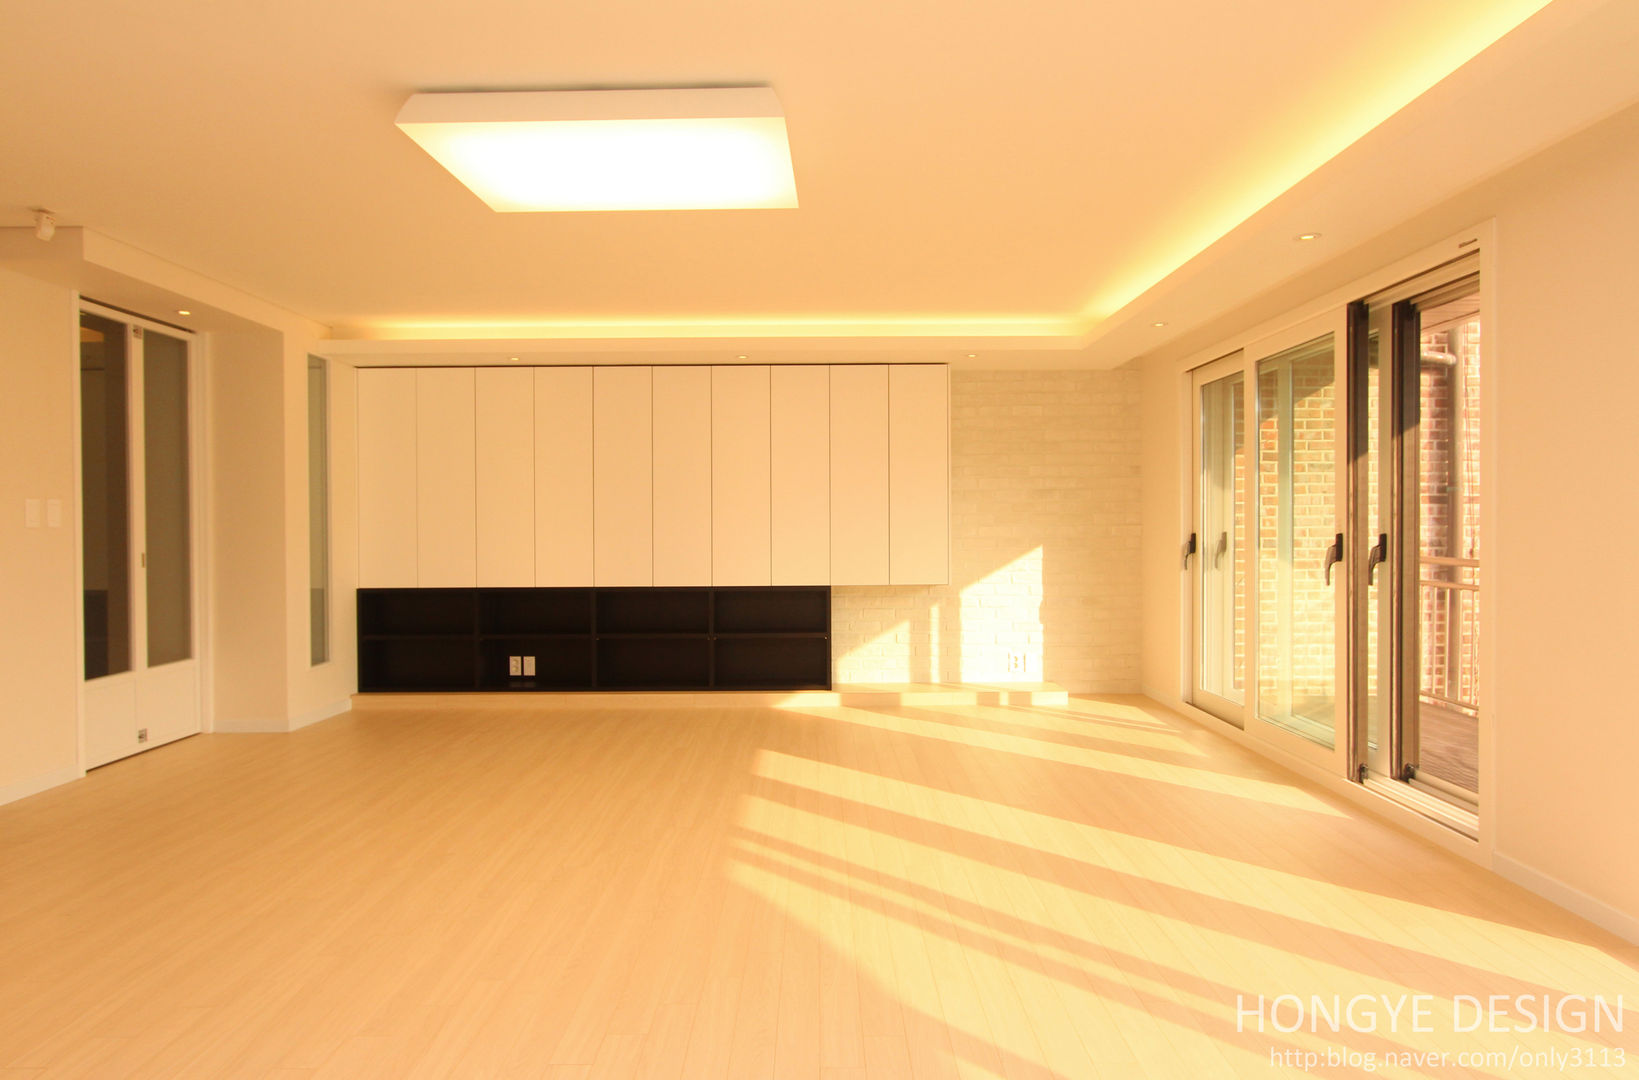 넓은 공간 속 최적화 된 디자인., 홍예디자인 홍예디자인 Living room